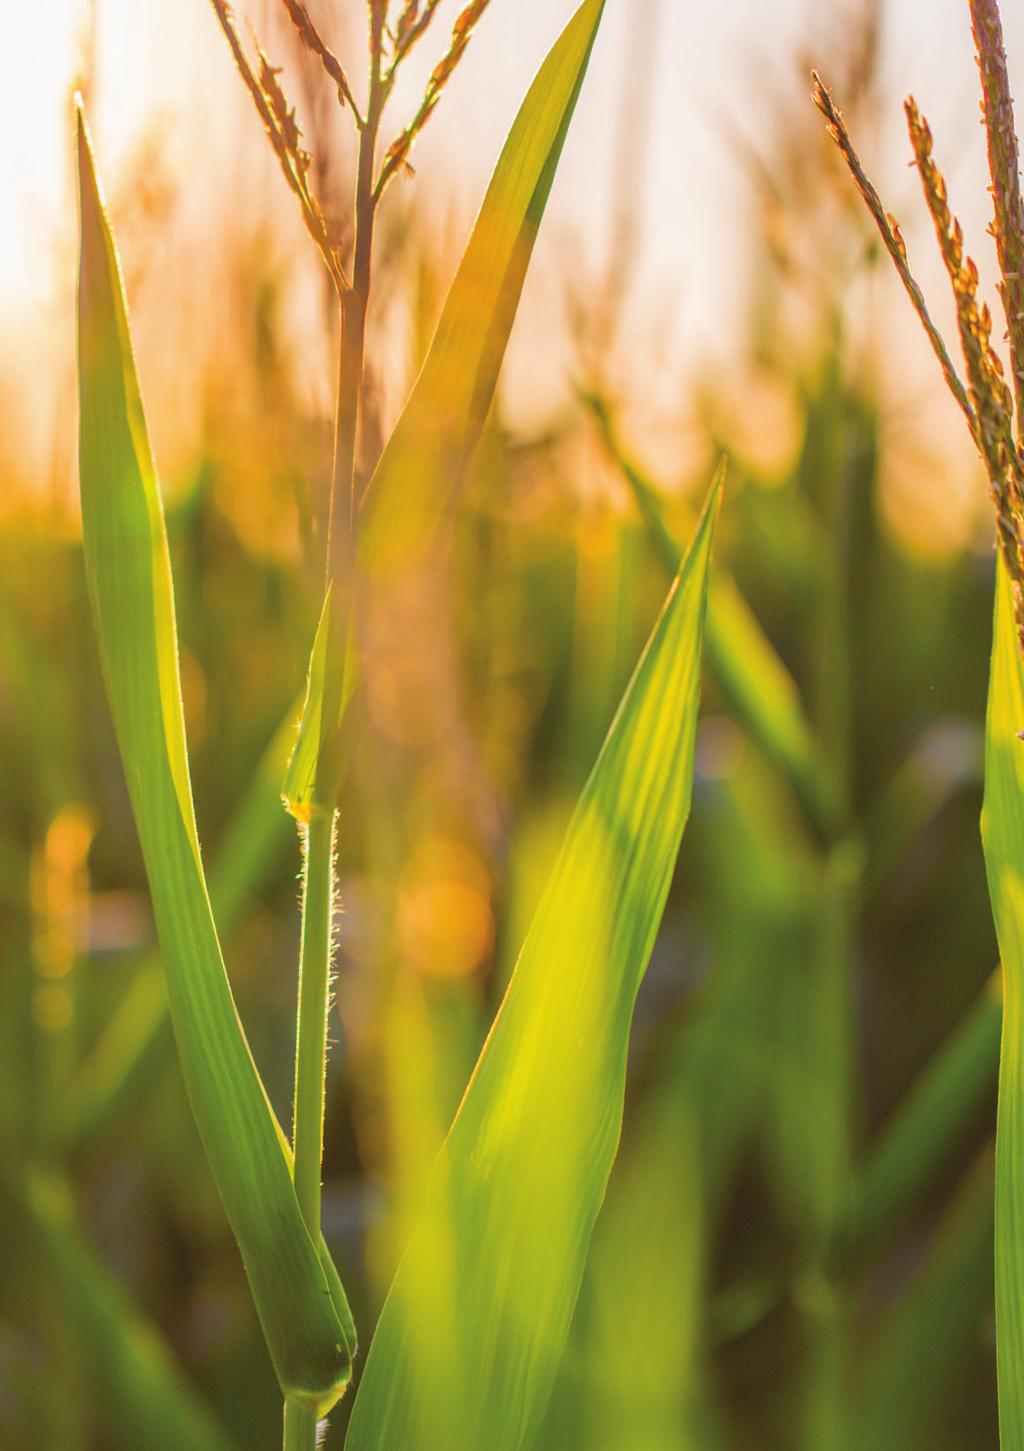 Tolerancia a sequía y calor extremo en 3 momentos críticos de desarrollo del cultivo de maíz.